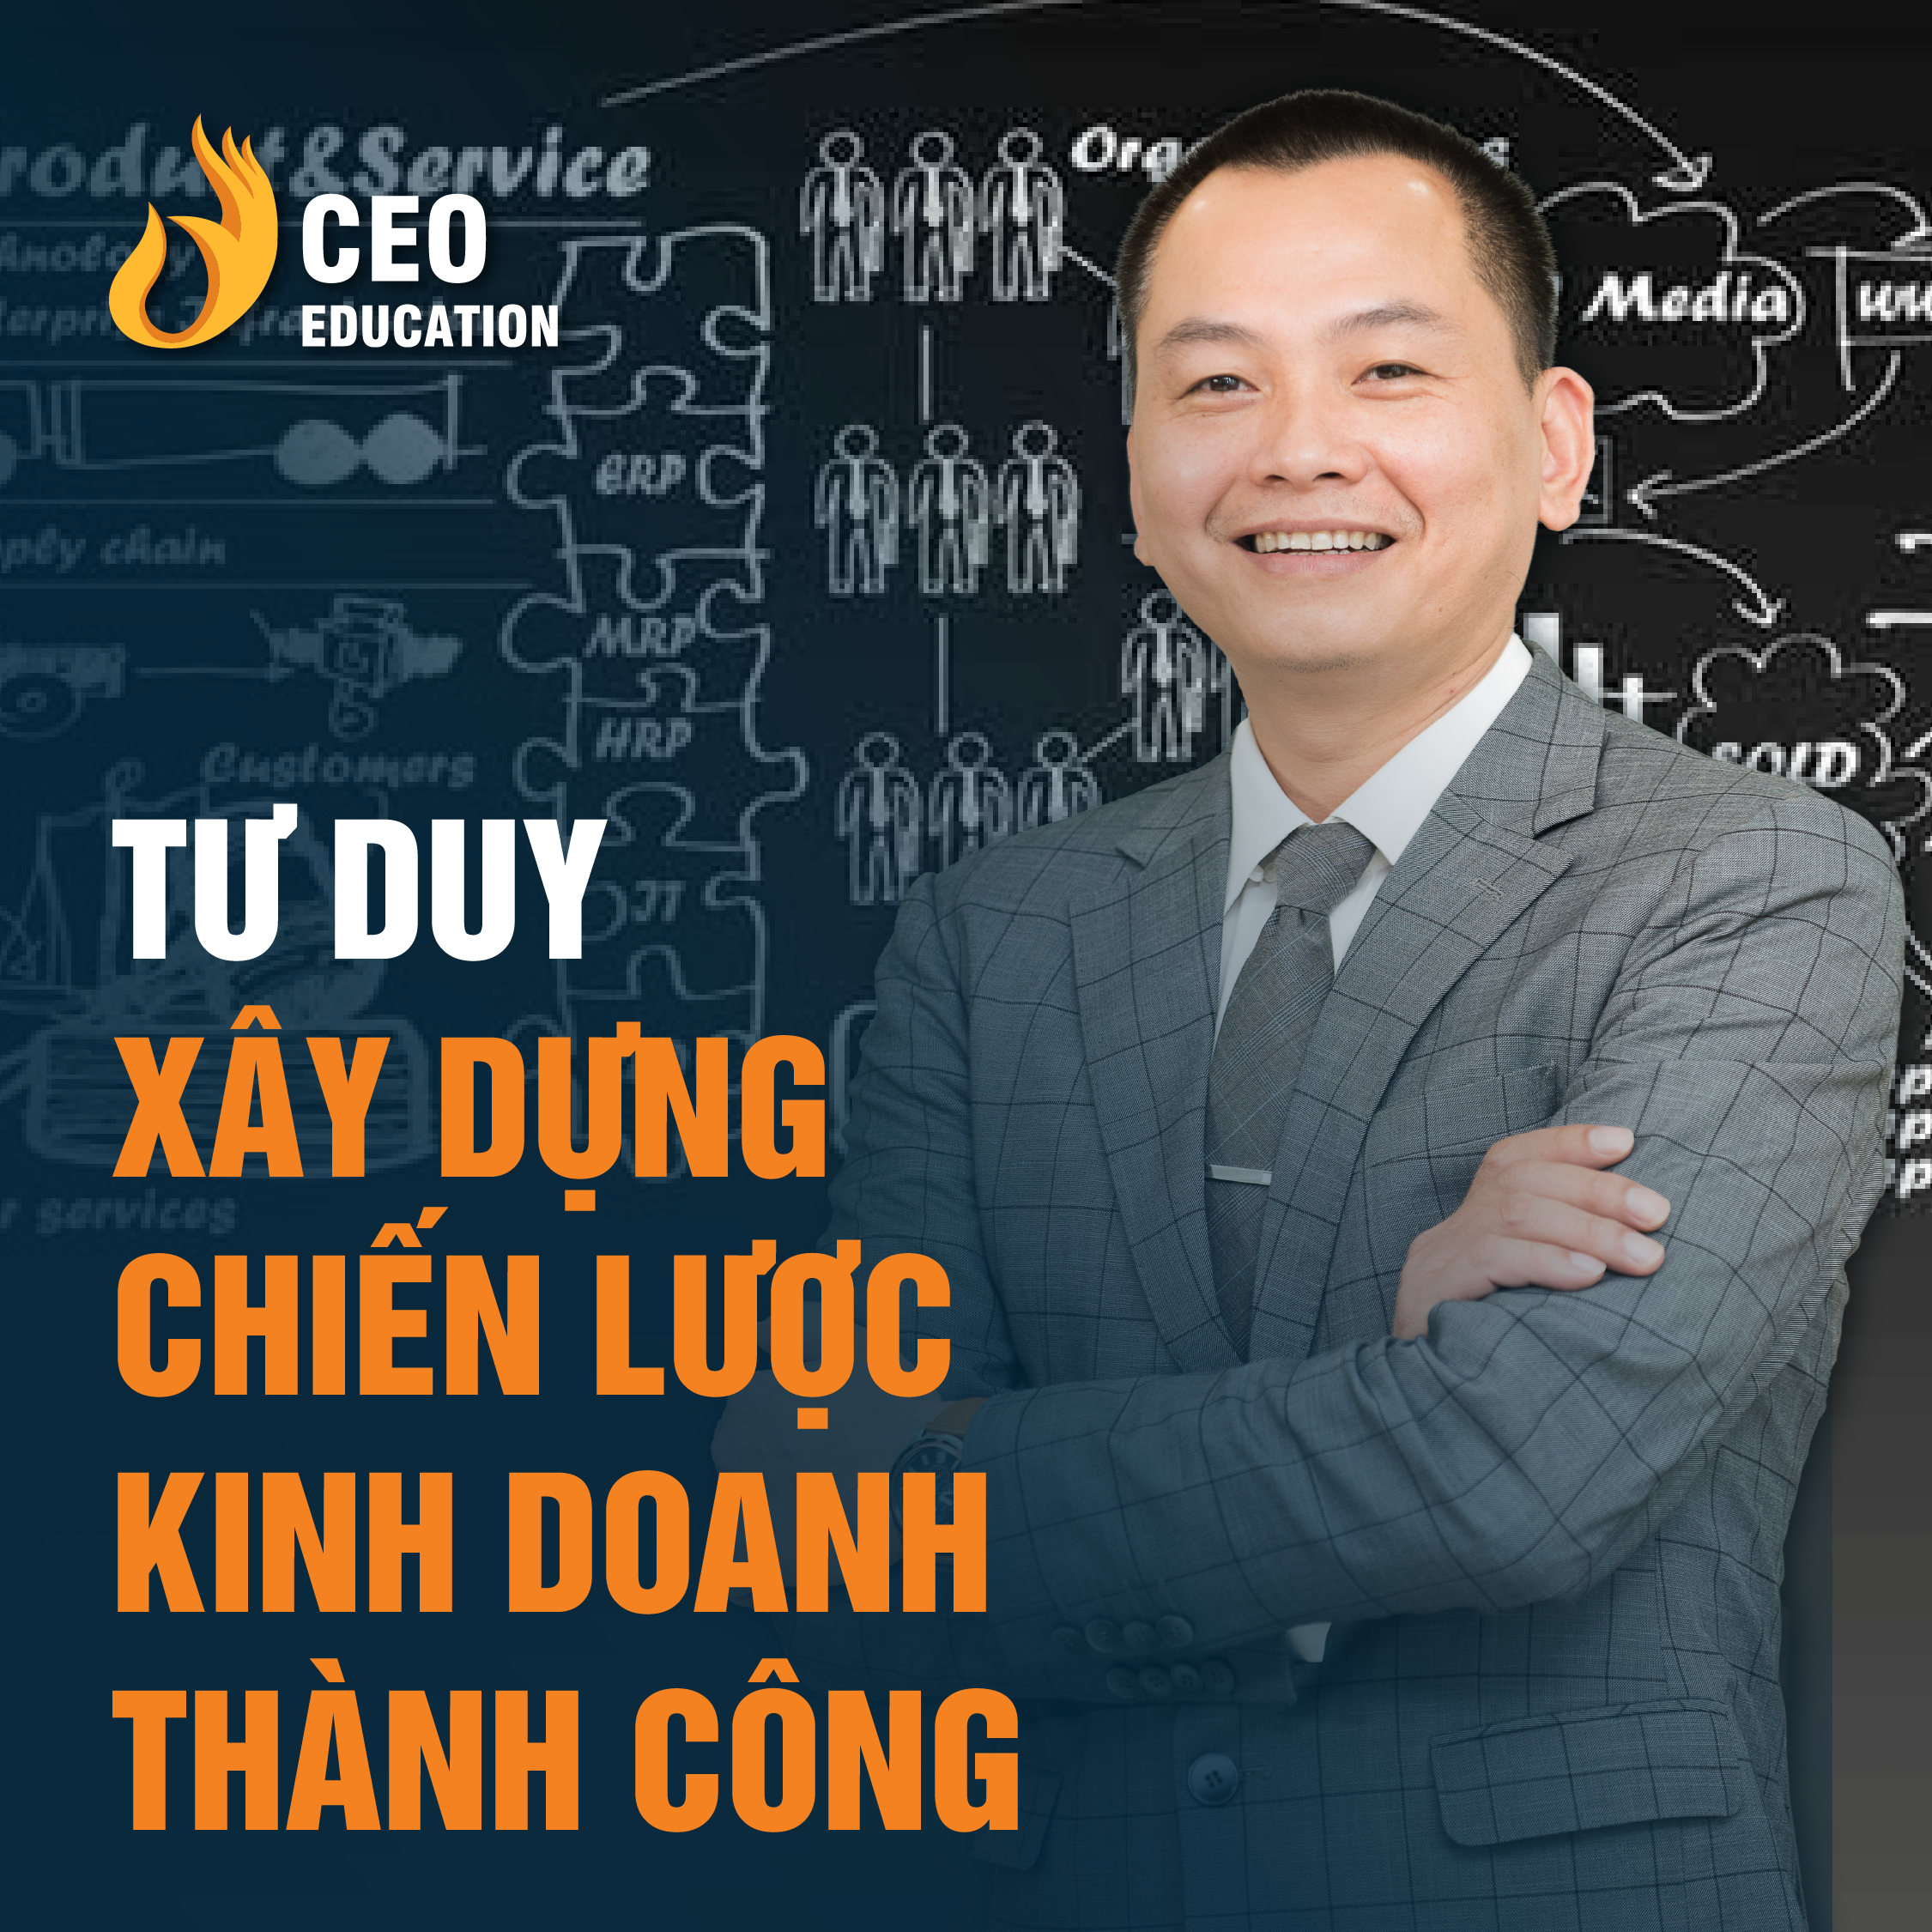 Tư duy xây dựng chiến lược kinh doanh thành công| Ngô Minh Tuấn | Học Viện CEO Việt Nam